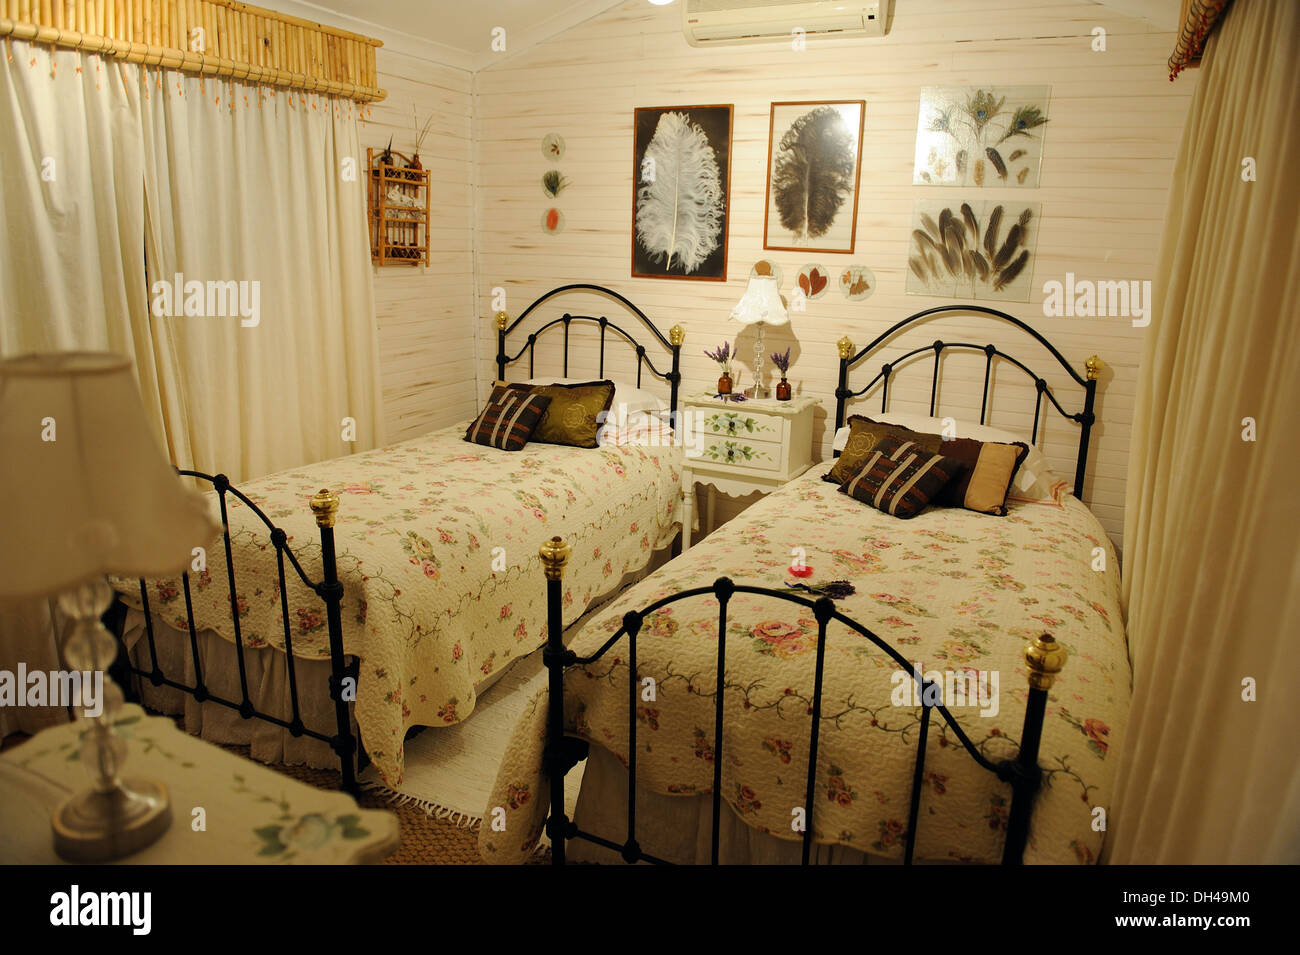 Schlafzimmer, Südafrika, keine Freigabe, nur für redaktionelle Verwendung Stockfoto